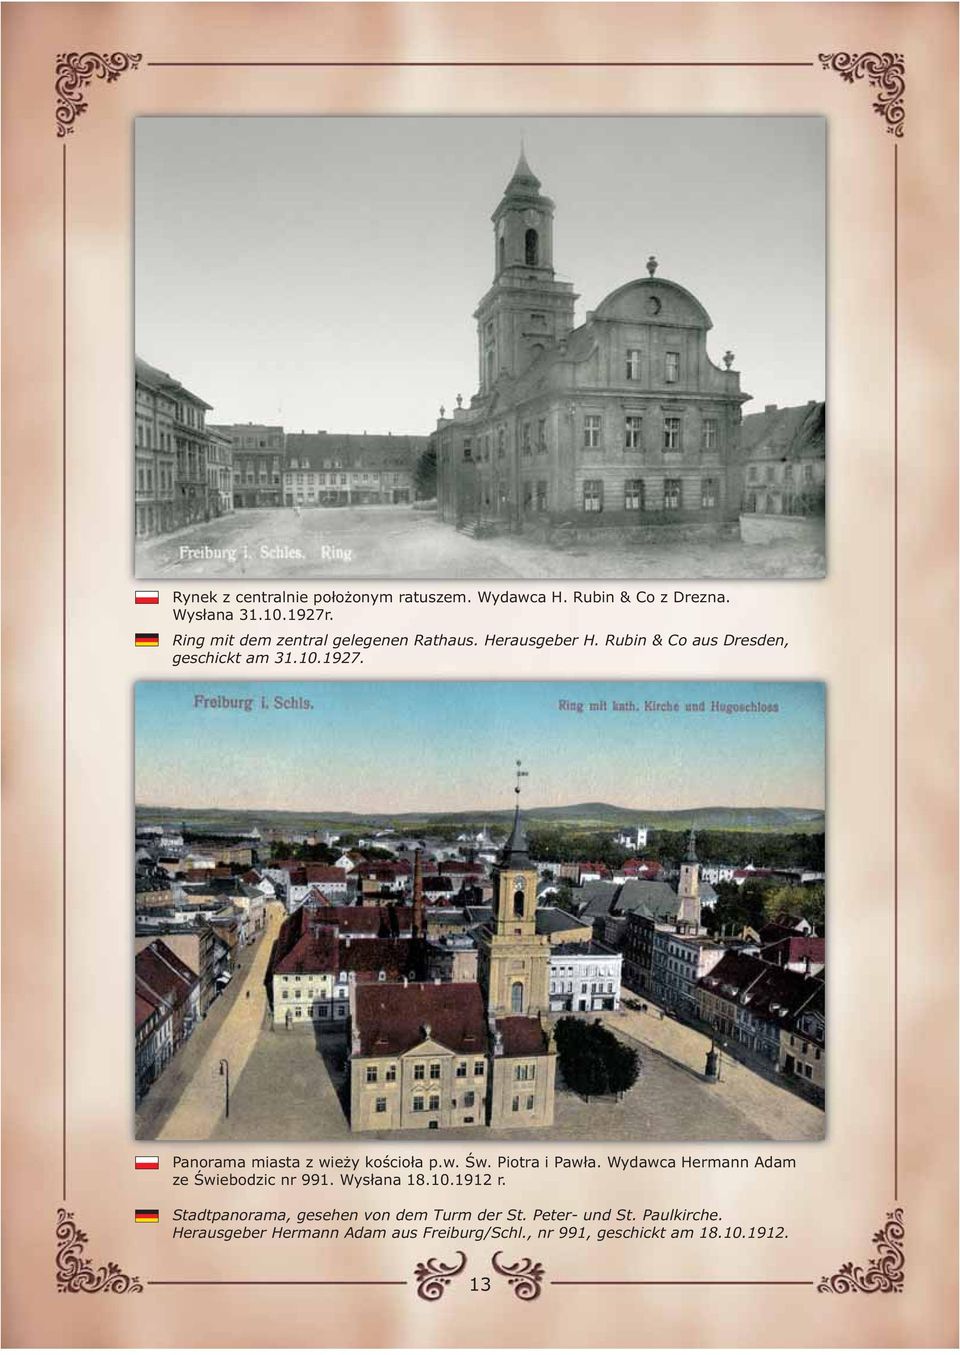 Panorama miasta z wieży kościoła p.w. Św. Piotra i Pawła. Wydawca Hermann Adam ze Świebodzic nr 991. Wysłana 18.10.